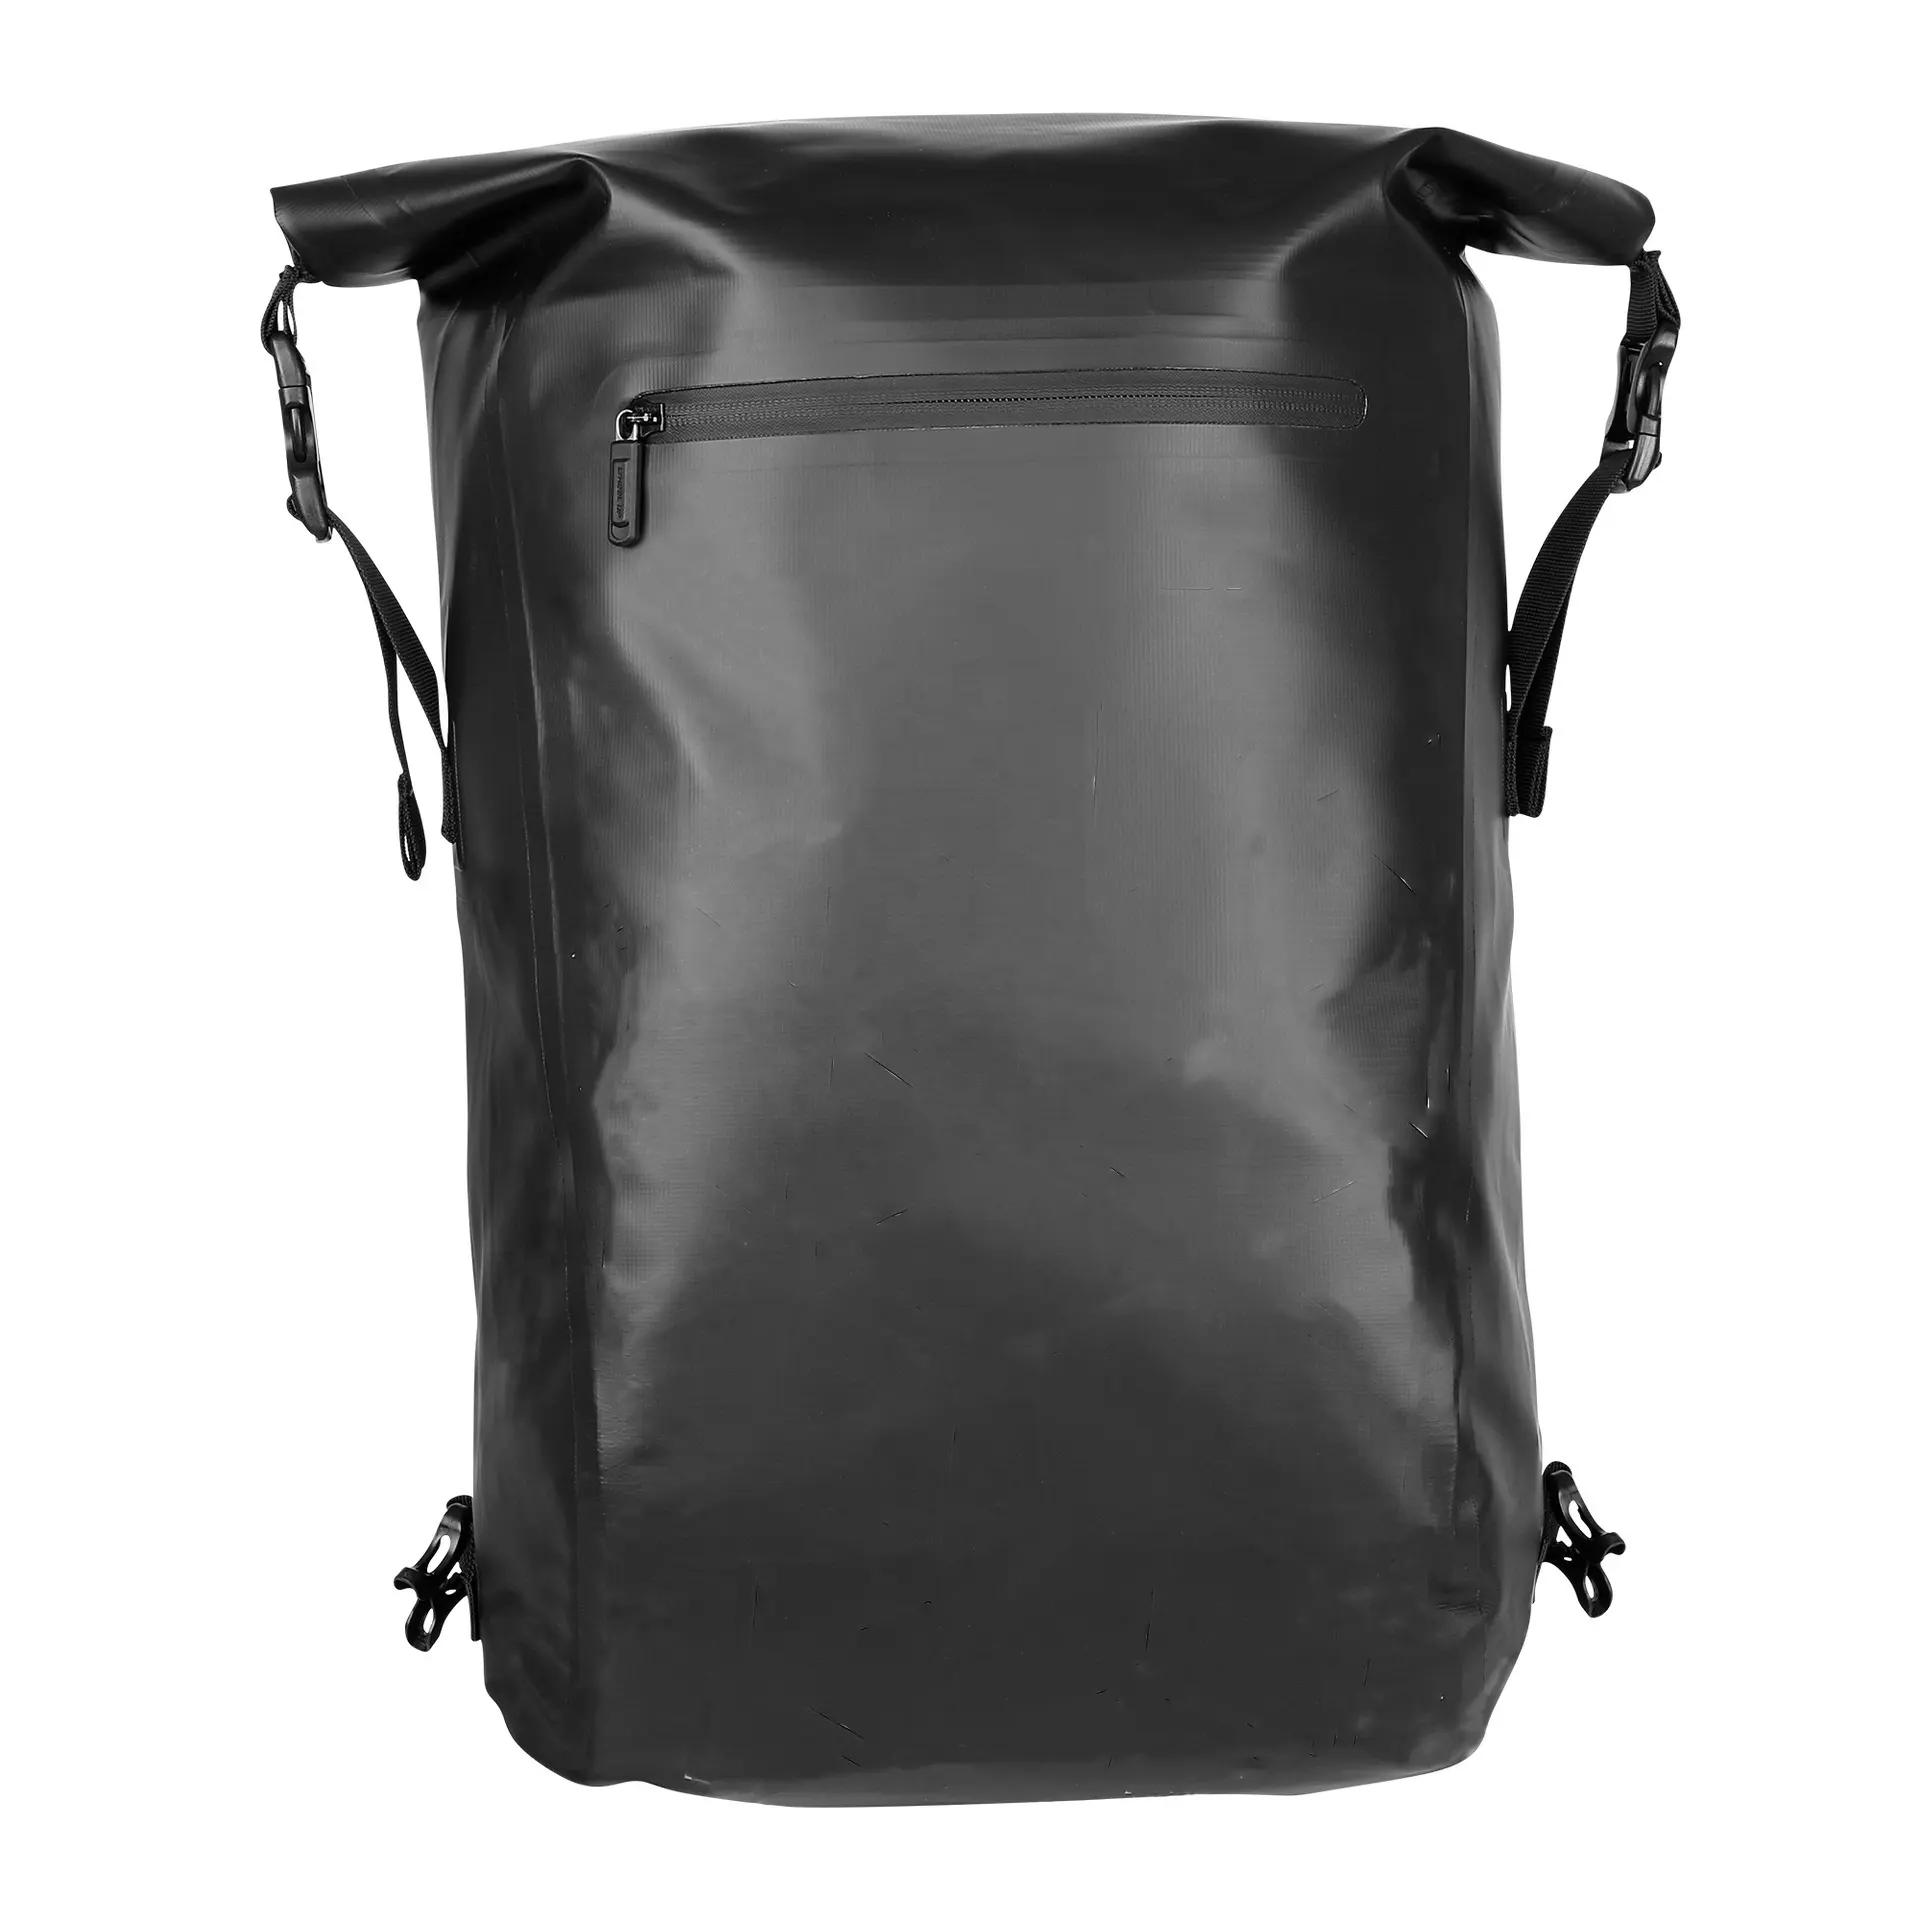 VANNO Fully Waterproof Bicycle Rear Rack Trunk Bag Laptop Backpack 3 in 1 Rucksack Bike Pannier Backpack with New Hook System